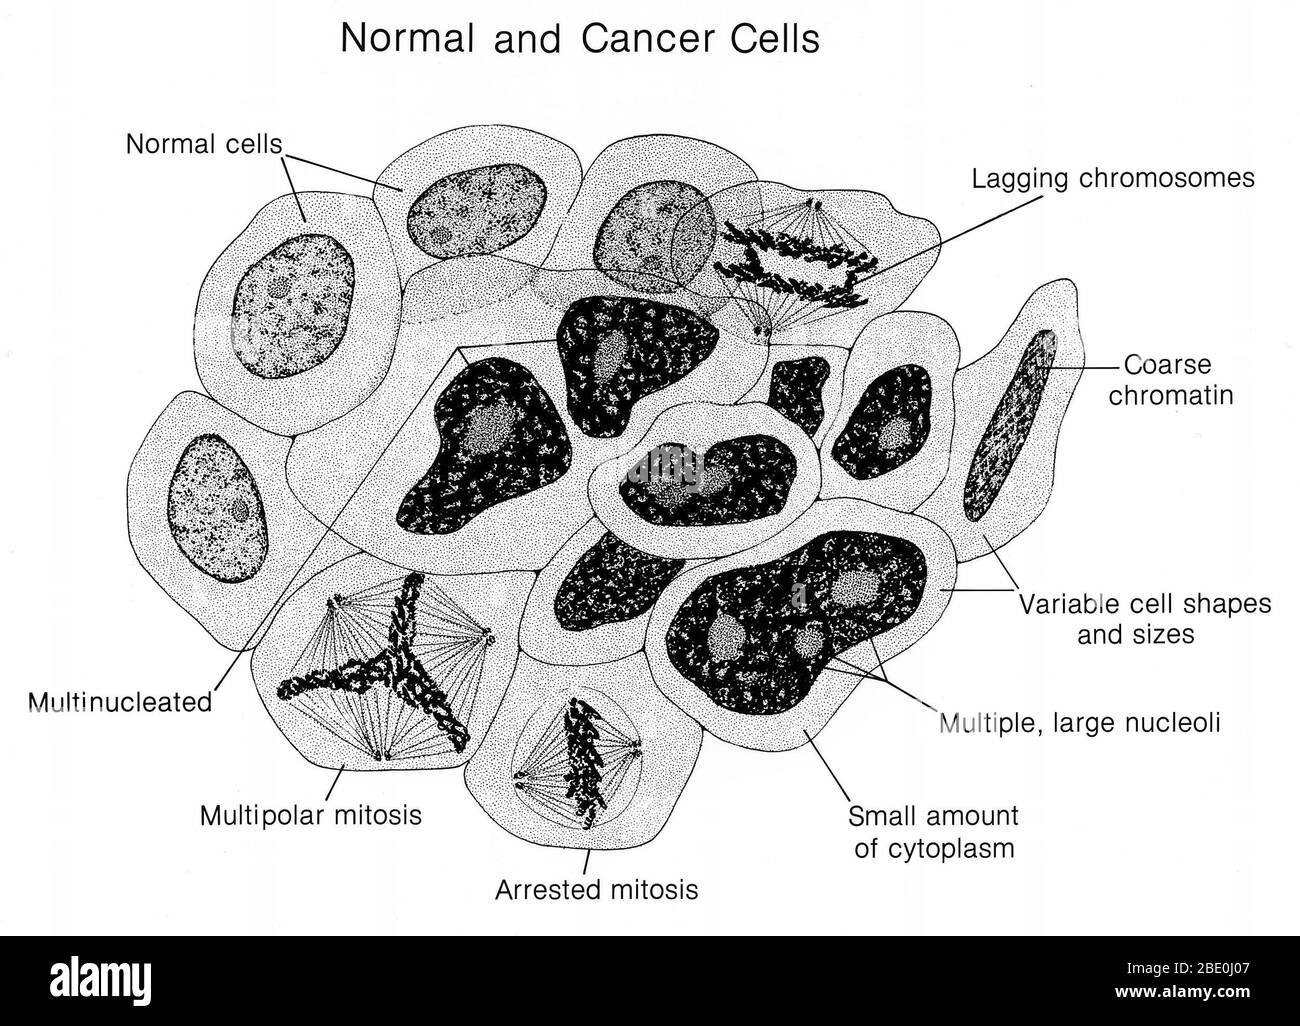 Illustration des cellules normales et cancéreuses côte à côte. Les caractéristiques normales et cancéreuses sont identifiées. Le cancer également connu sous le nom de tumeur maligne ou néoplasme maligne, est un groupe de maladies impliquant une croissance cellulaire anormale avec le potentiel d'envahir ou de se propager à d'autres parties du corps. Toutes les tumeurs ne sont pas cancéreuses; les tumeurs bénignes ne se propagent pas à d'autres parties du corps. Les signes et symptômes possibles sont : une nouvelle bosse, des saignements anormaux, une toux prolongée, une perte de poids inexpliquée et un changement dans les mouvements intestinaux entre autres. Bien que ces symptômes puissent indiquer un cancer, ils peuvent également se produire Banque D'Images